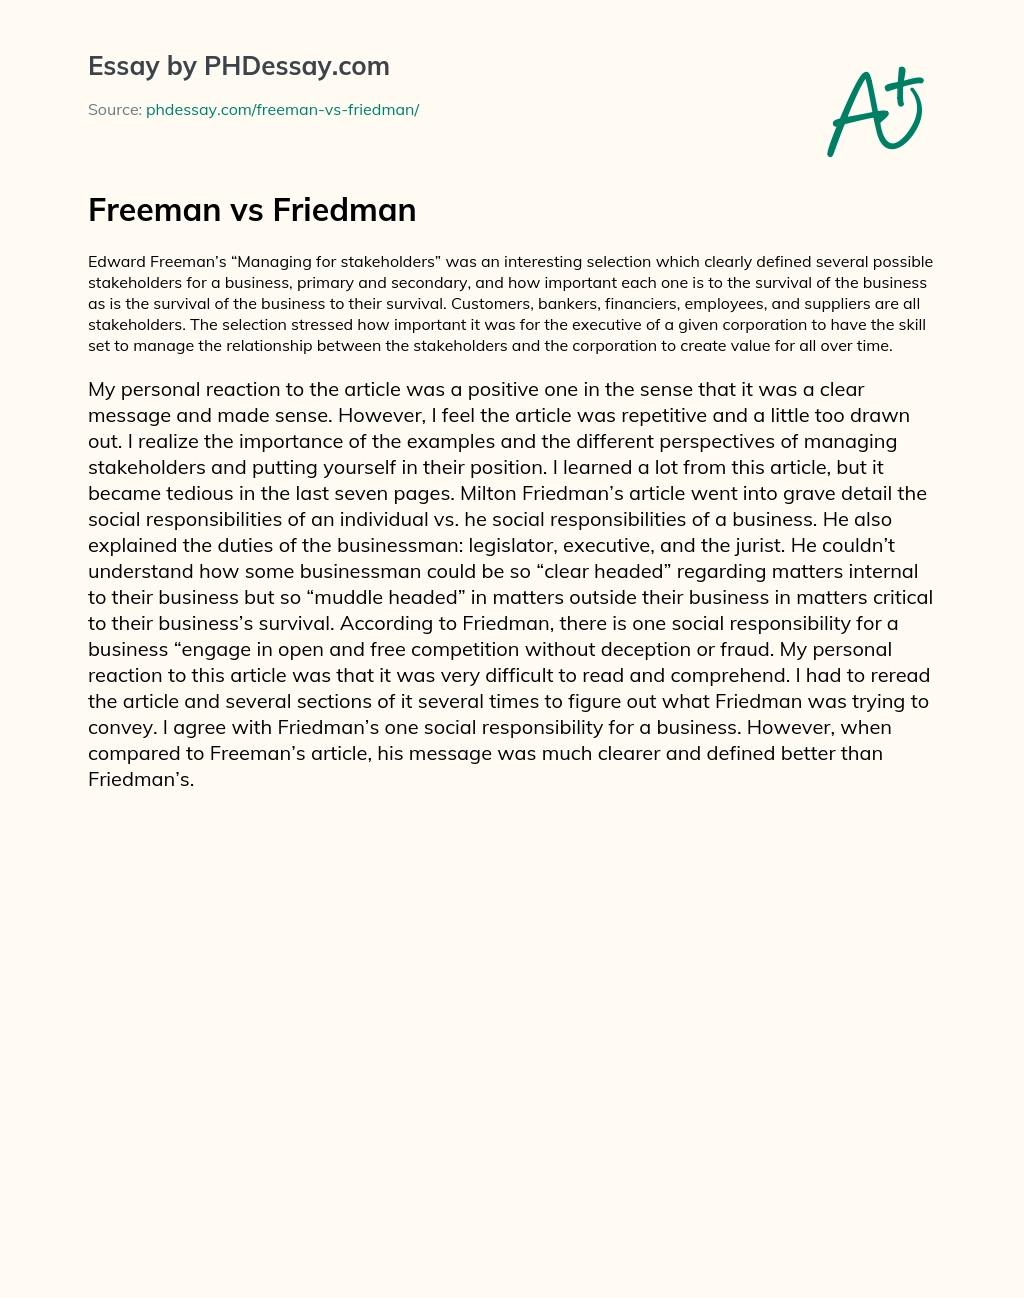 Freeman vs Friedman essay